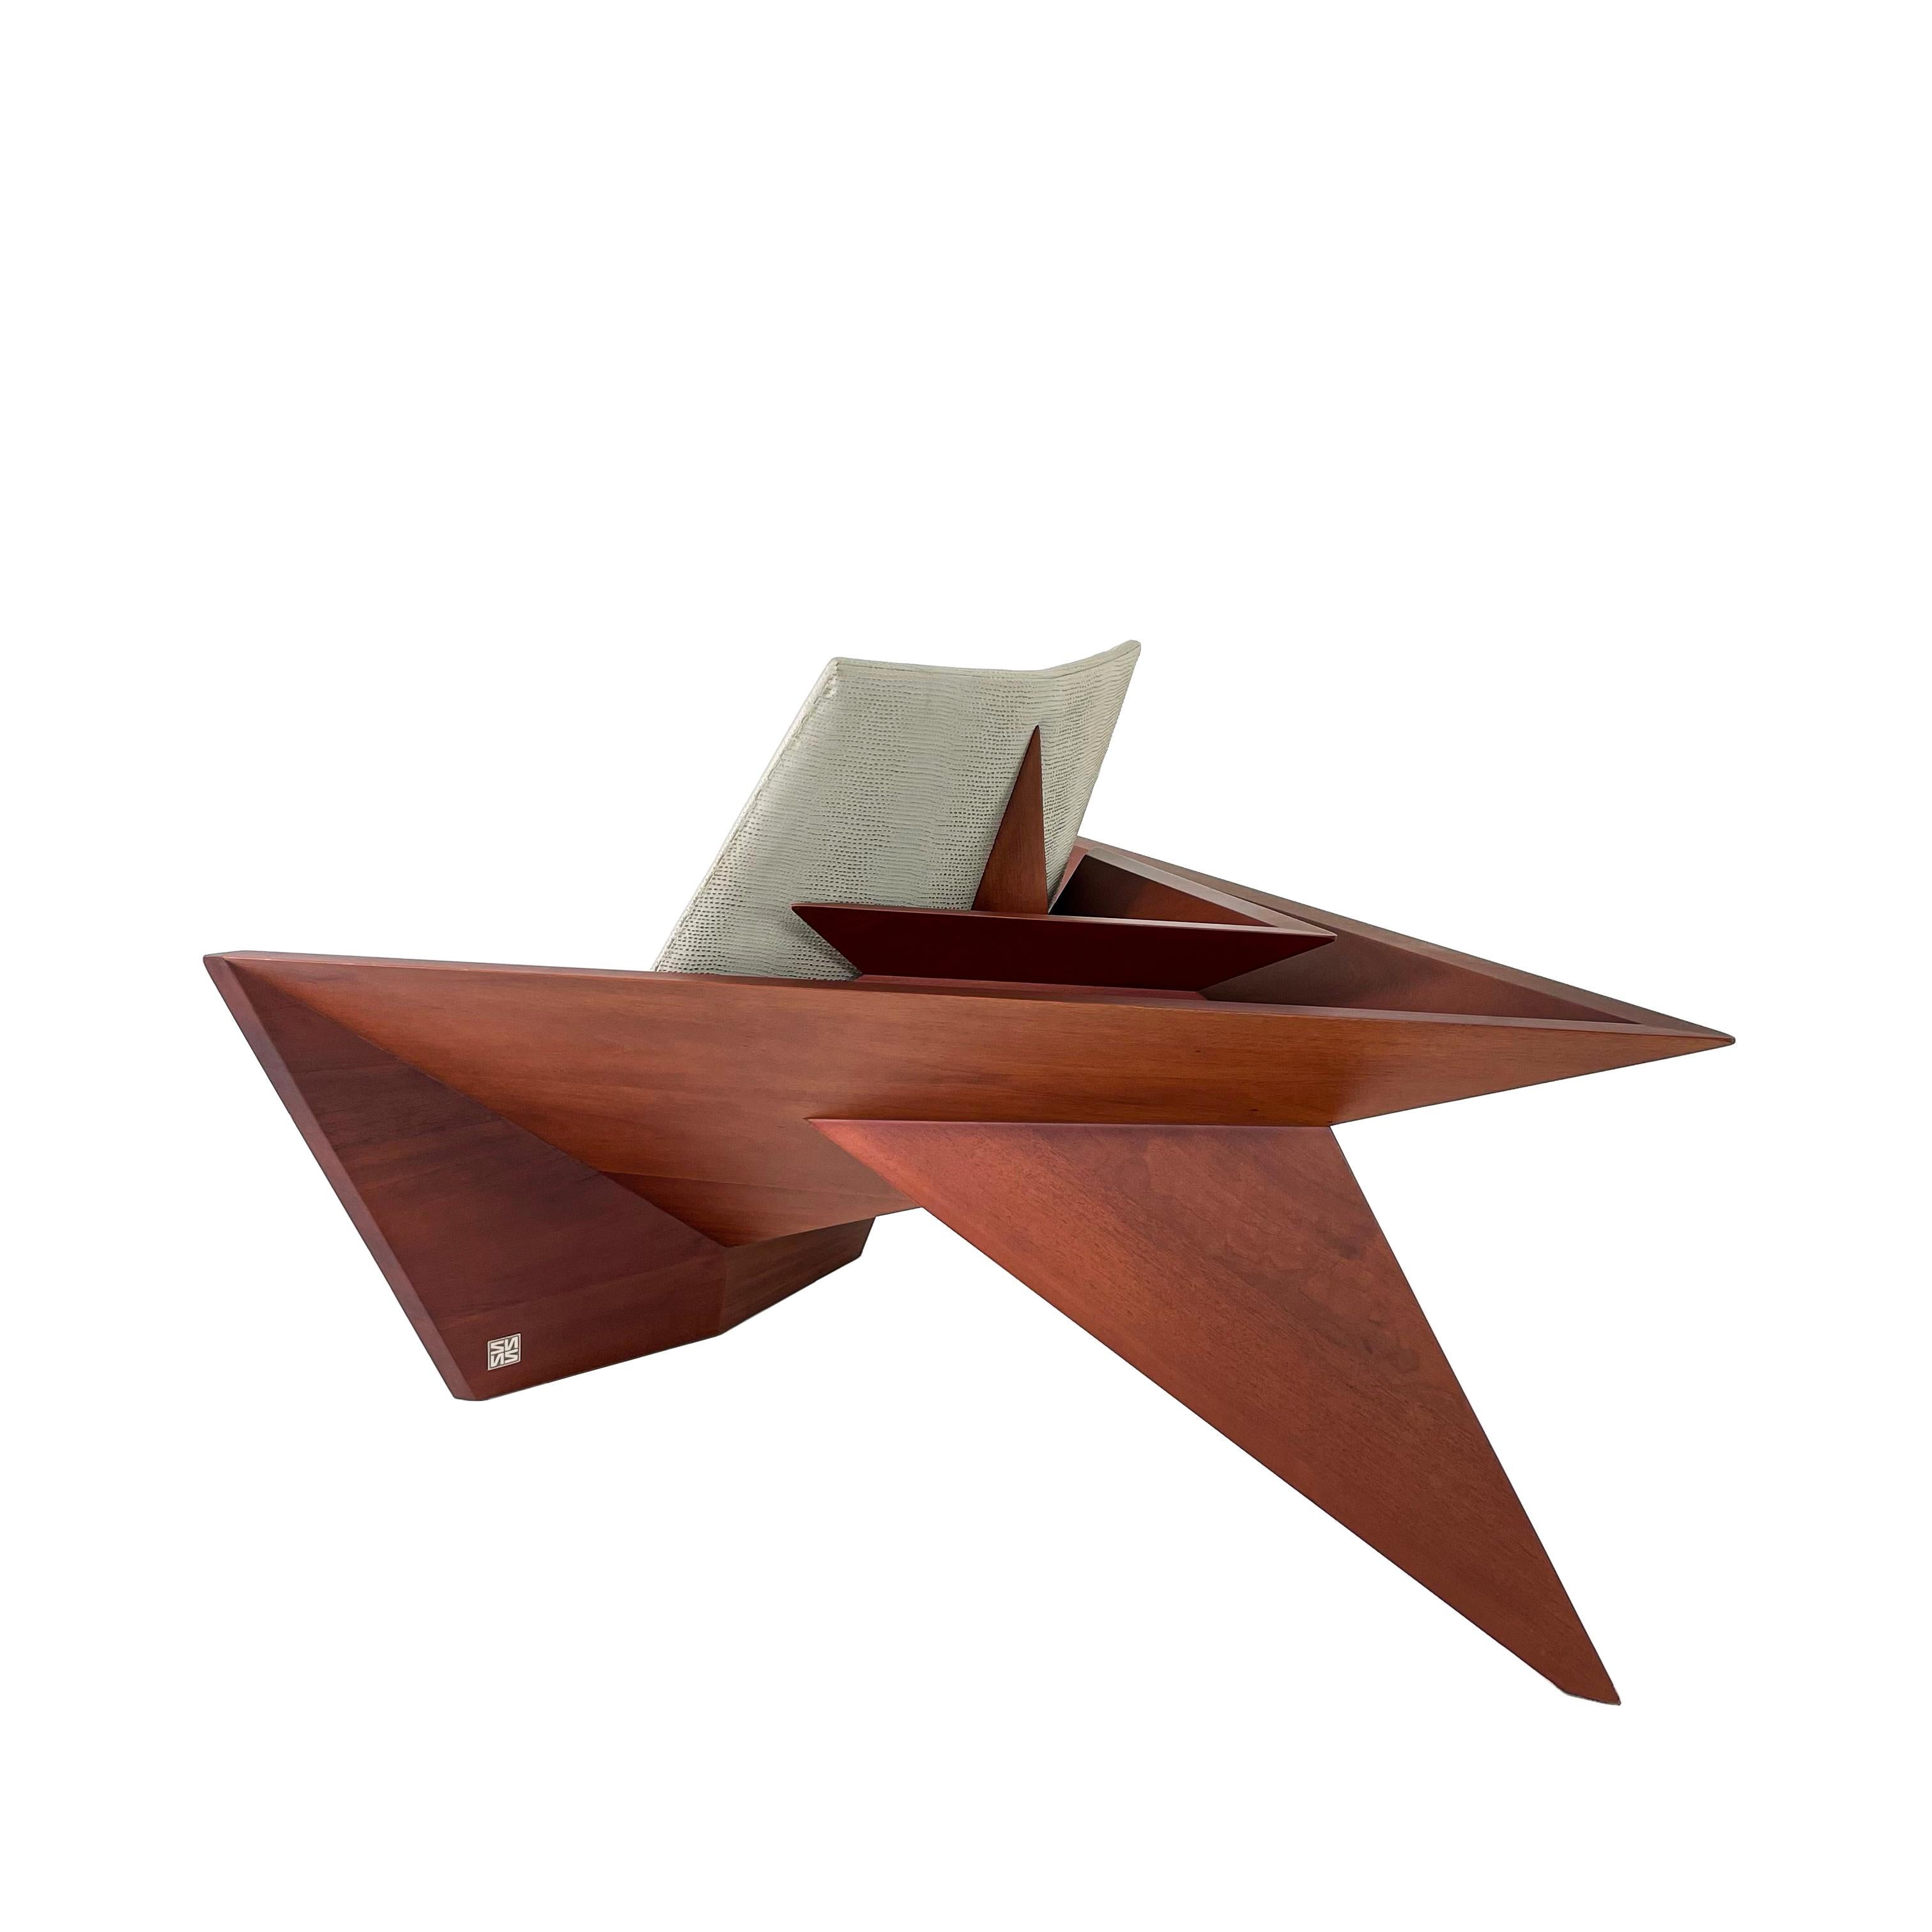 Moderne Sessel aus Massivholz von Pierre Sarkis aus der Valentina Kollektion. Inspiriert von der Origami-Faltentheorie, die in der grundlegenden Geometrie den Sinn des Lebens, der Wahrheit und der Schönheit findet. Einzigartiger und bequemer Stuhl